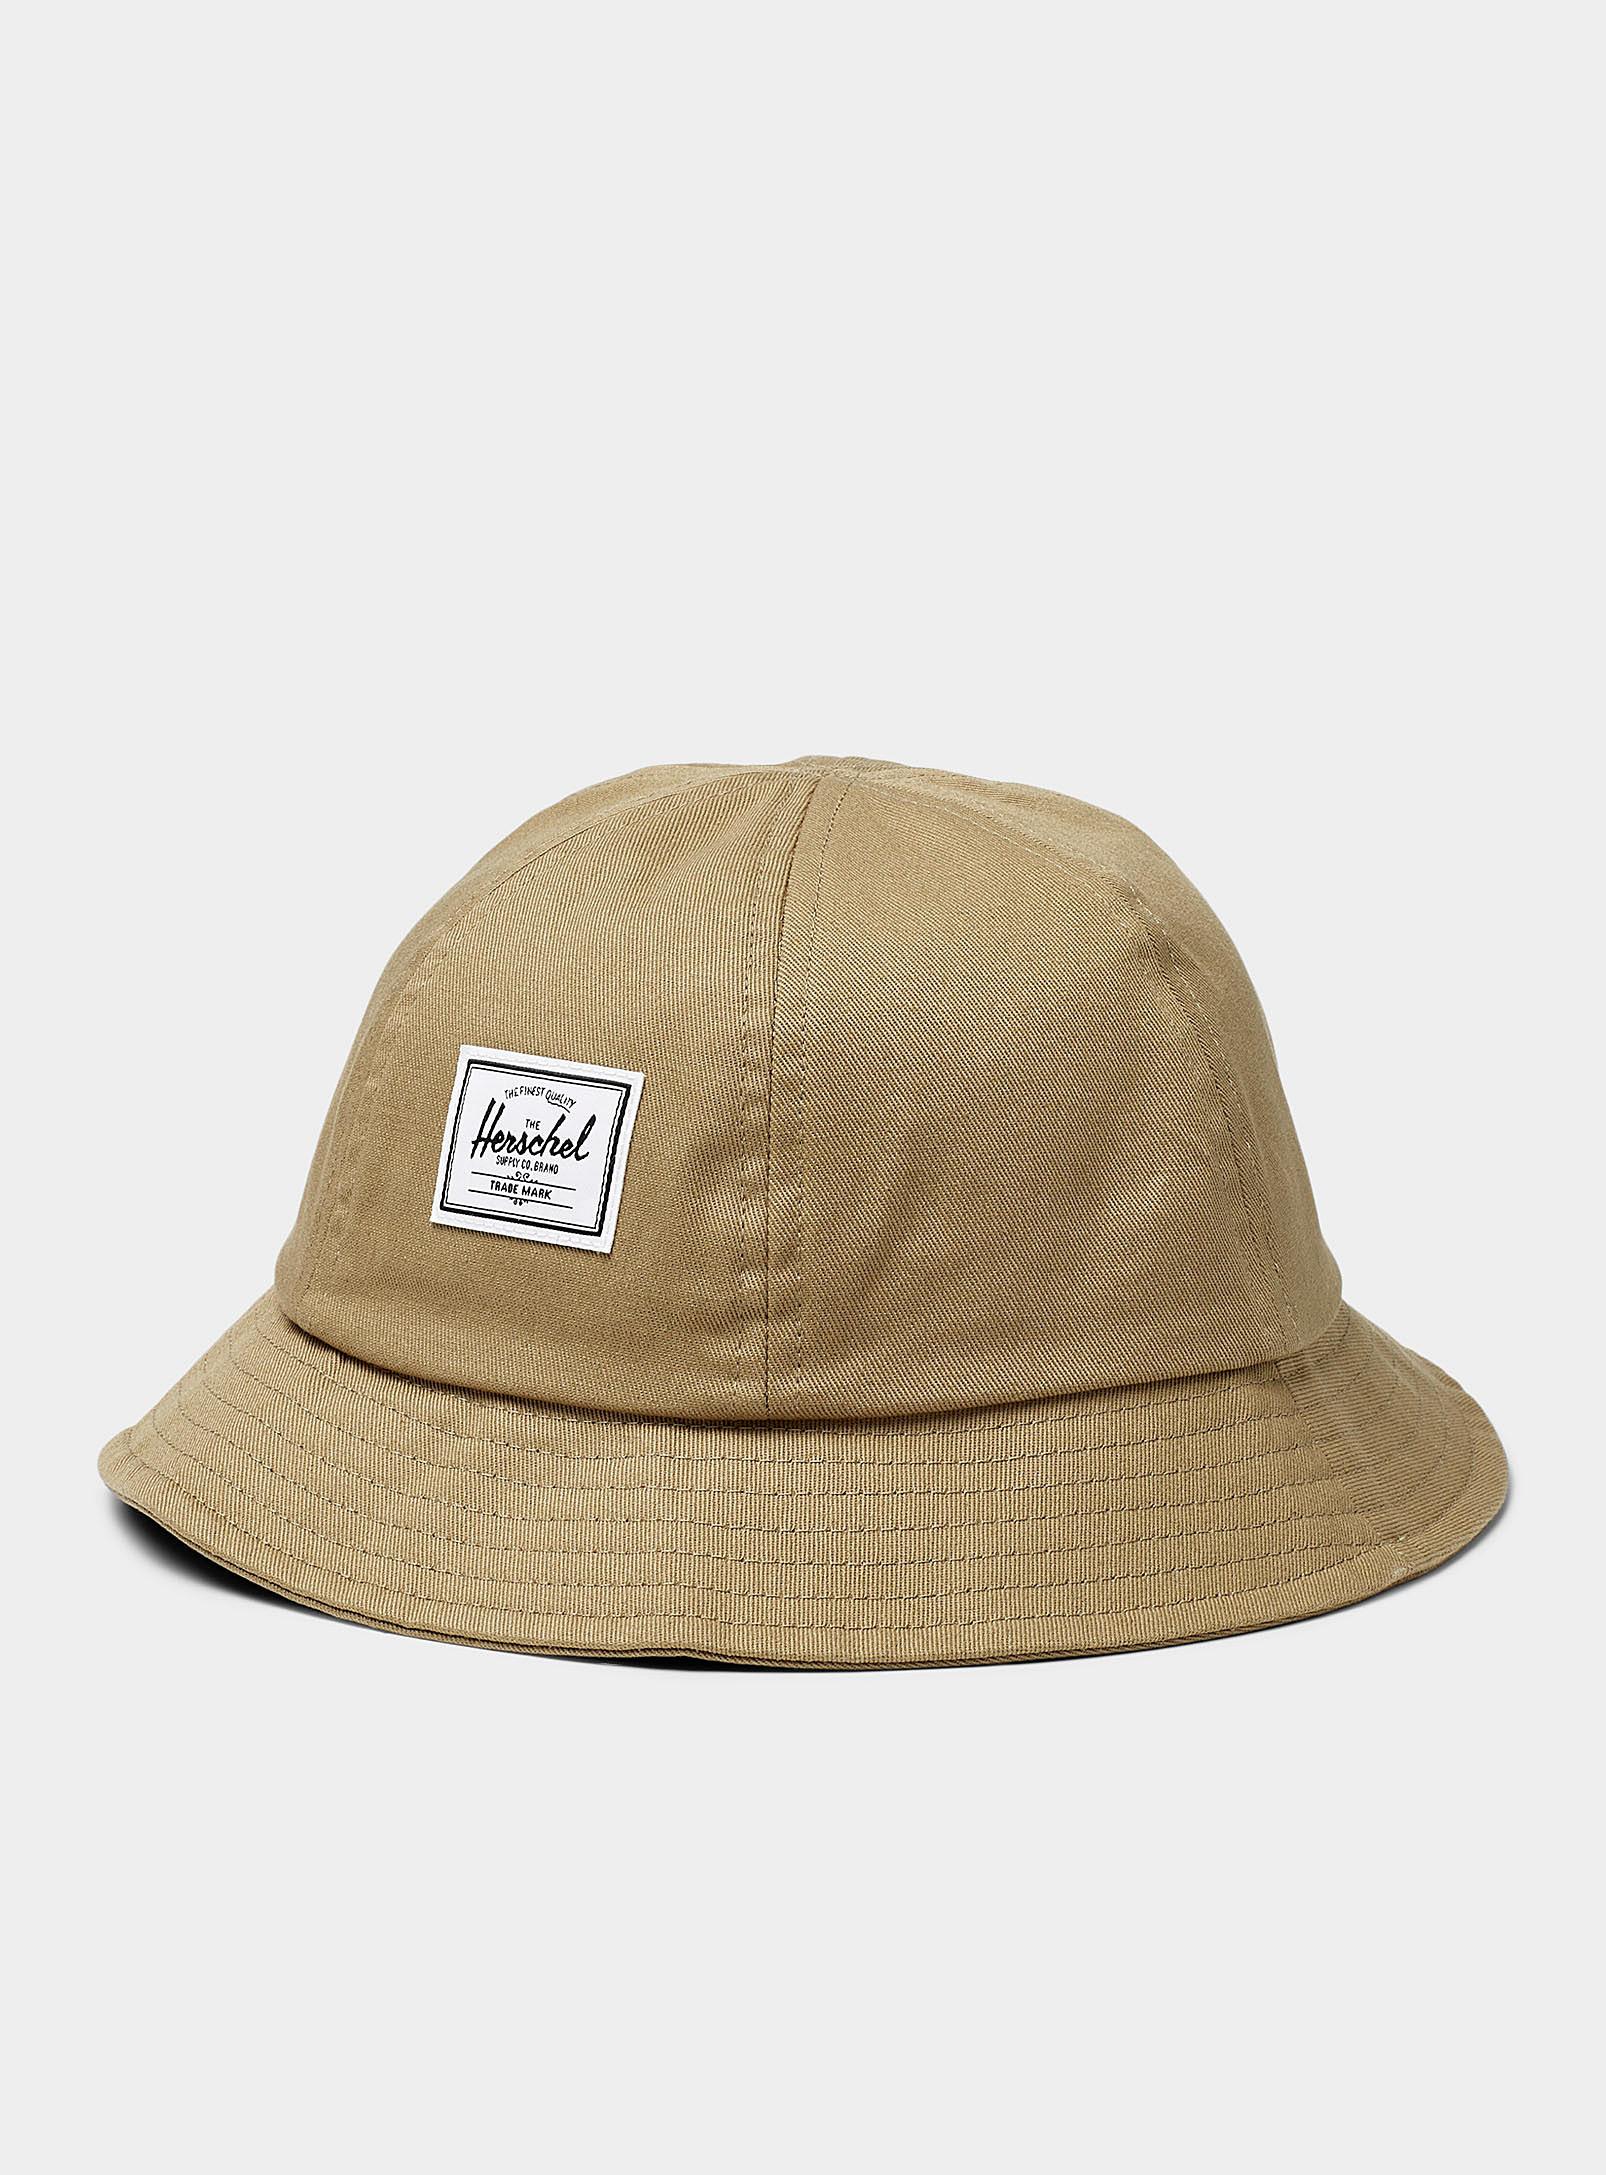 Herschel Supply Co. Handerson Cloche Bucket Hat in Natural for Men | Lyst